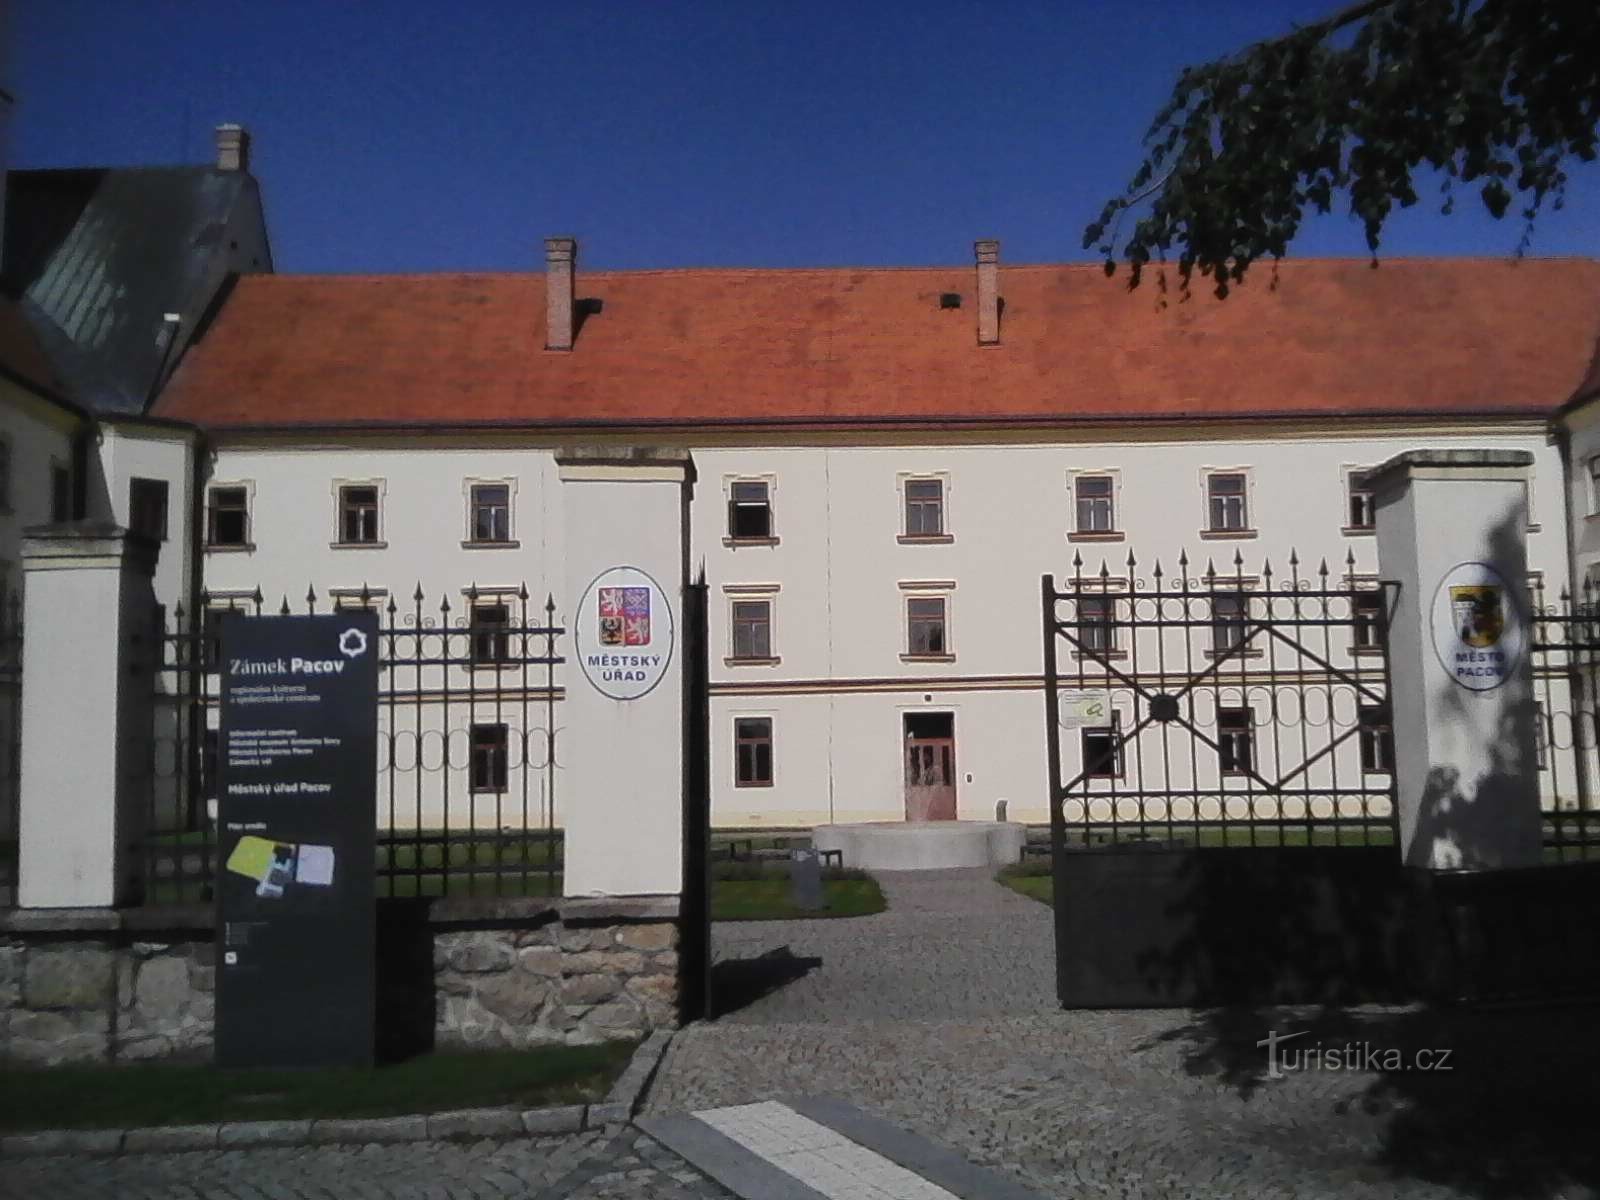 2. O castelo Pacovský também abriga o Museu Antonín Sova da década de 30.